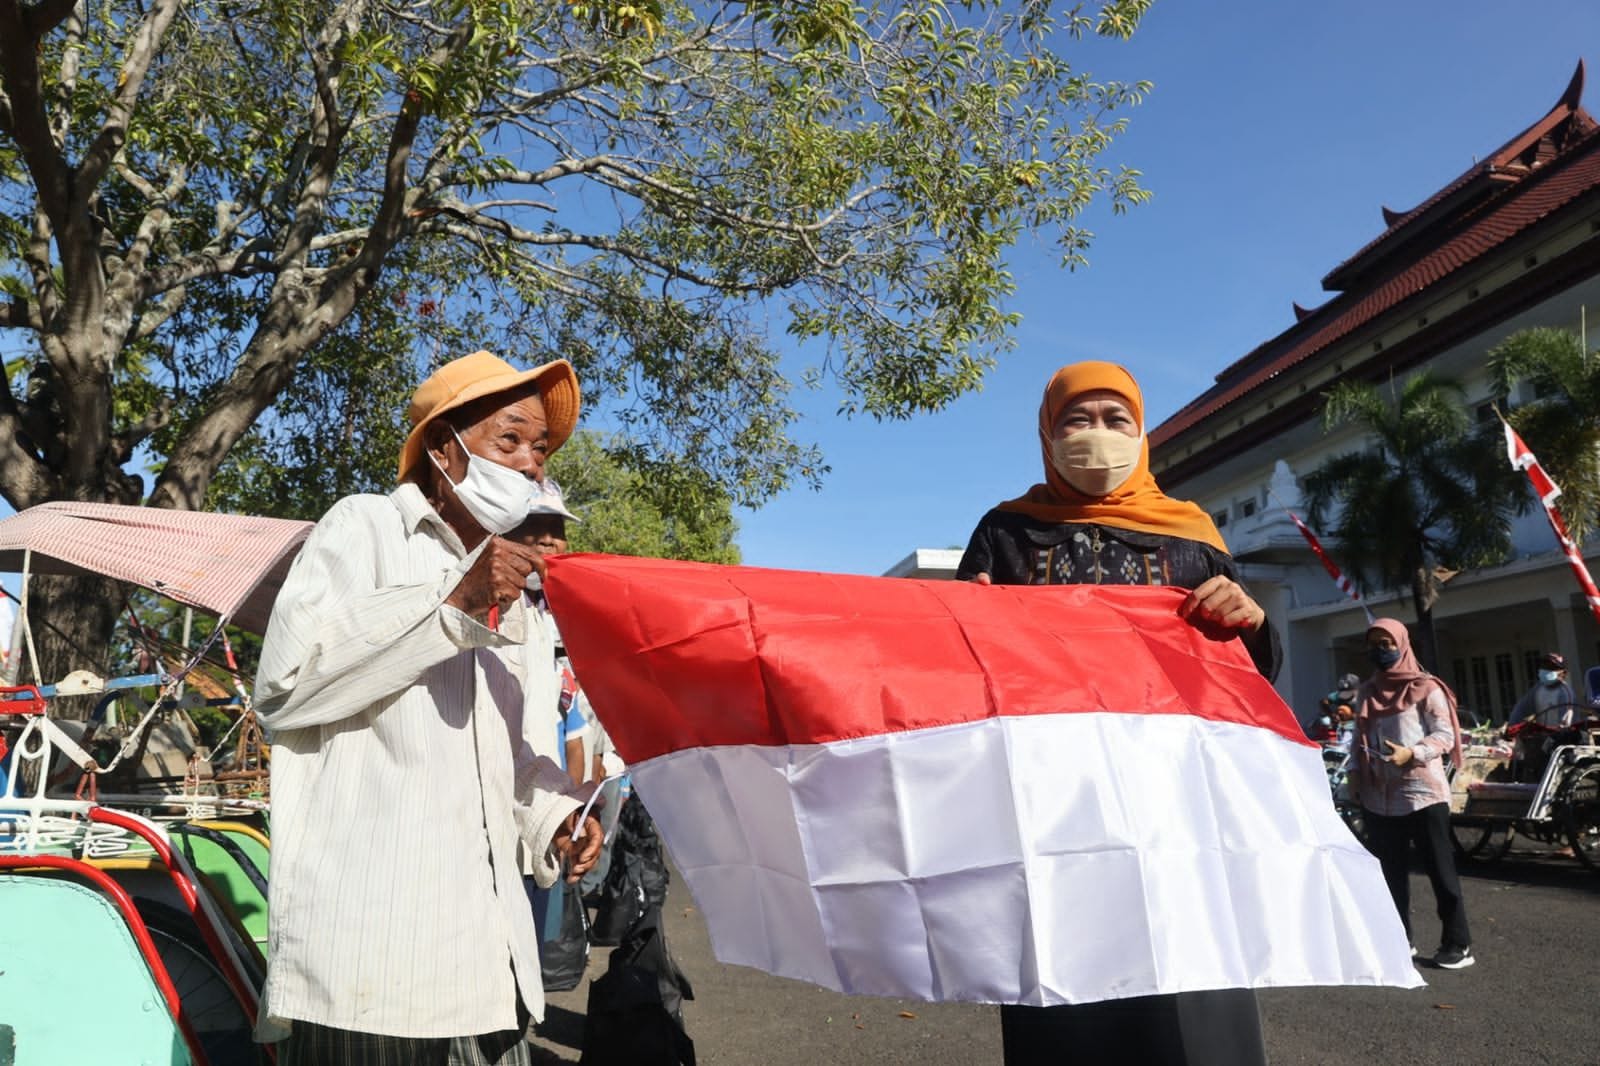 Gubernur Jawa Timur Khofifah Indar Parawansa ketika membentangkan bendera merah putih bersama dengan tukang becak.